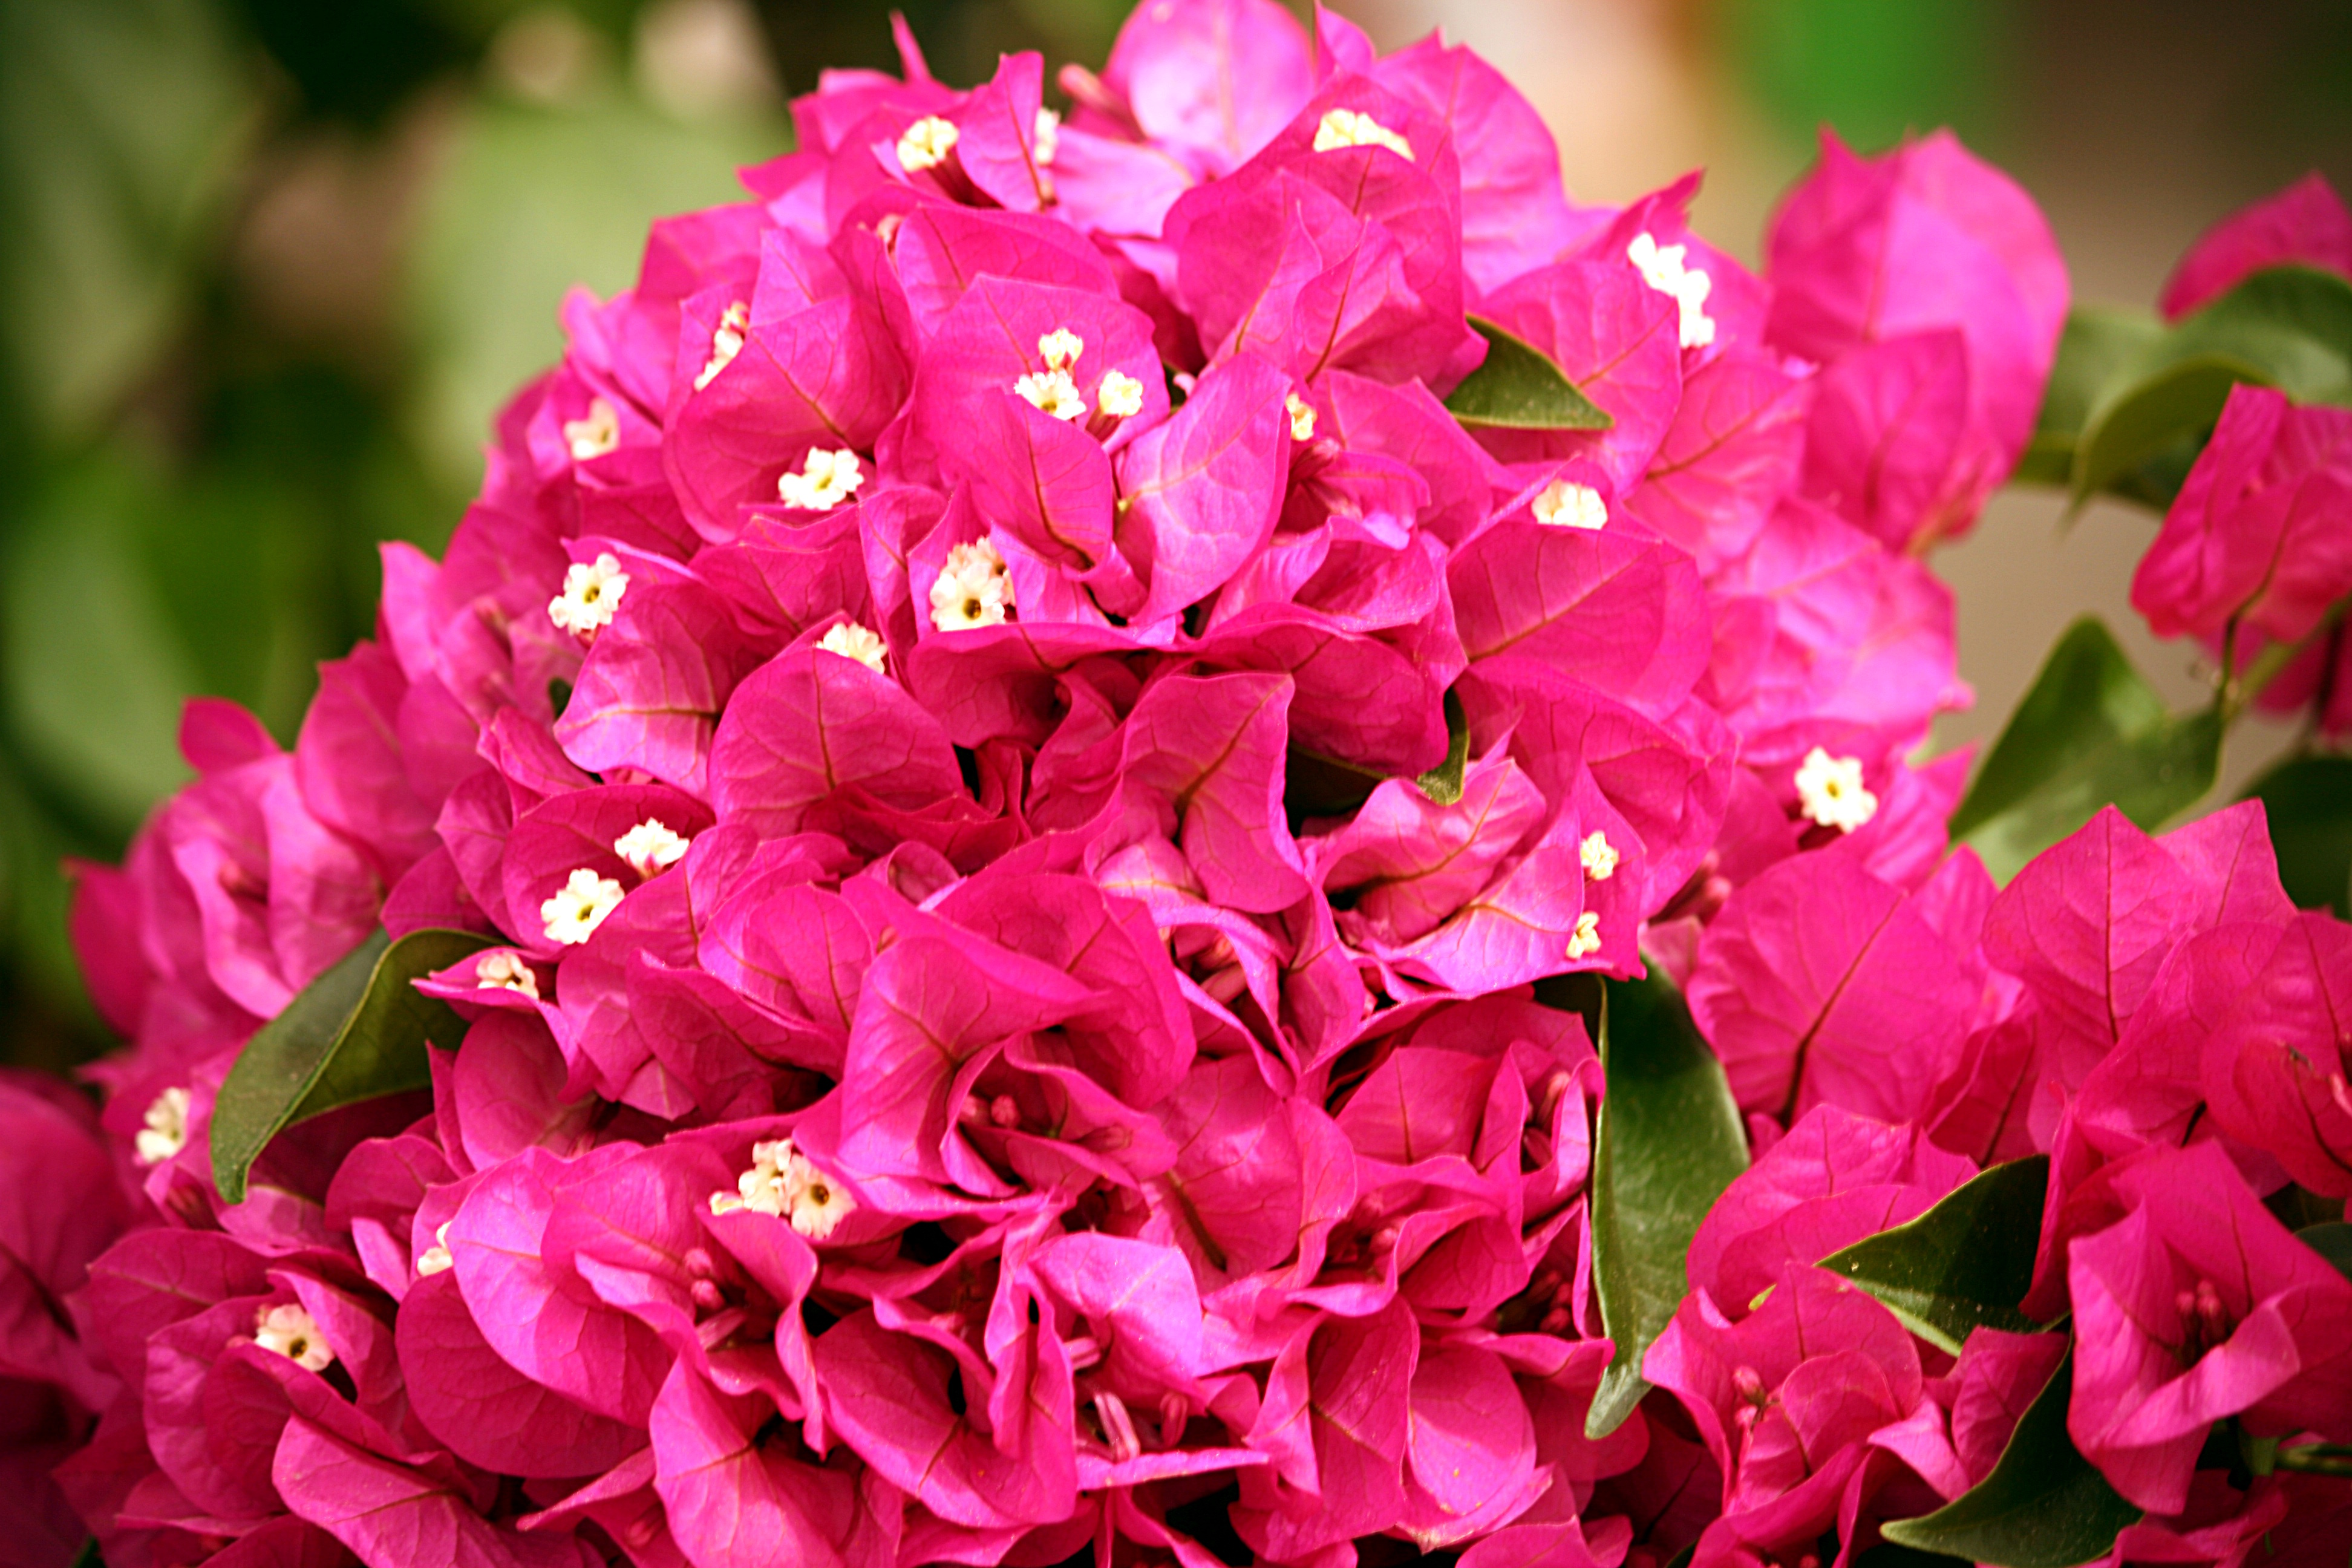 File:Bougainvillea flowers 4102.JPG - Wikimedia Commons